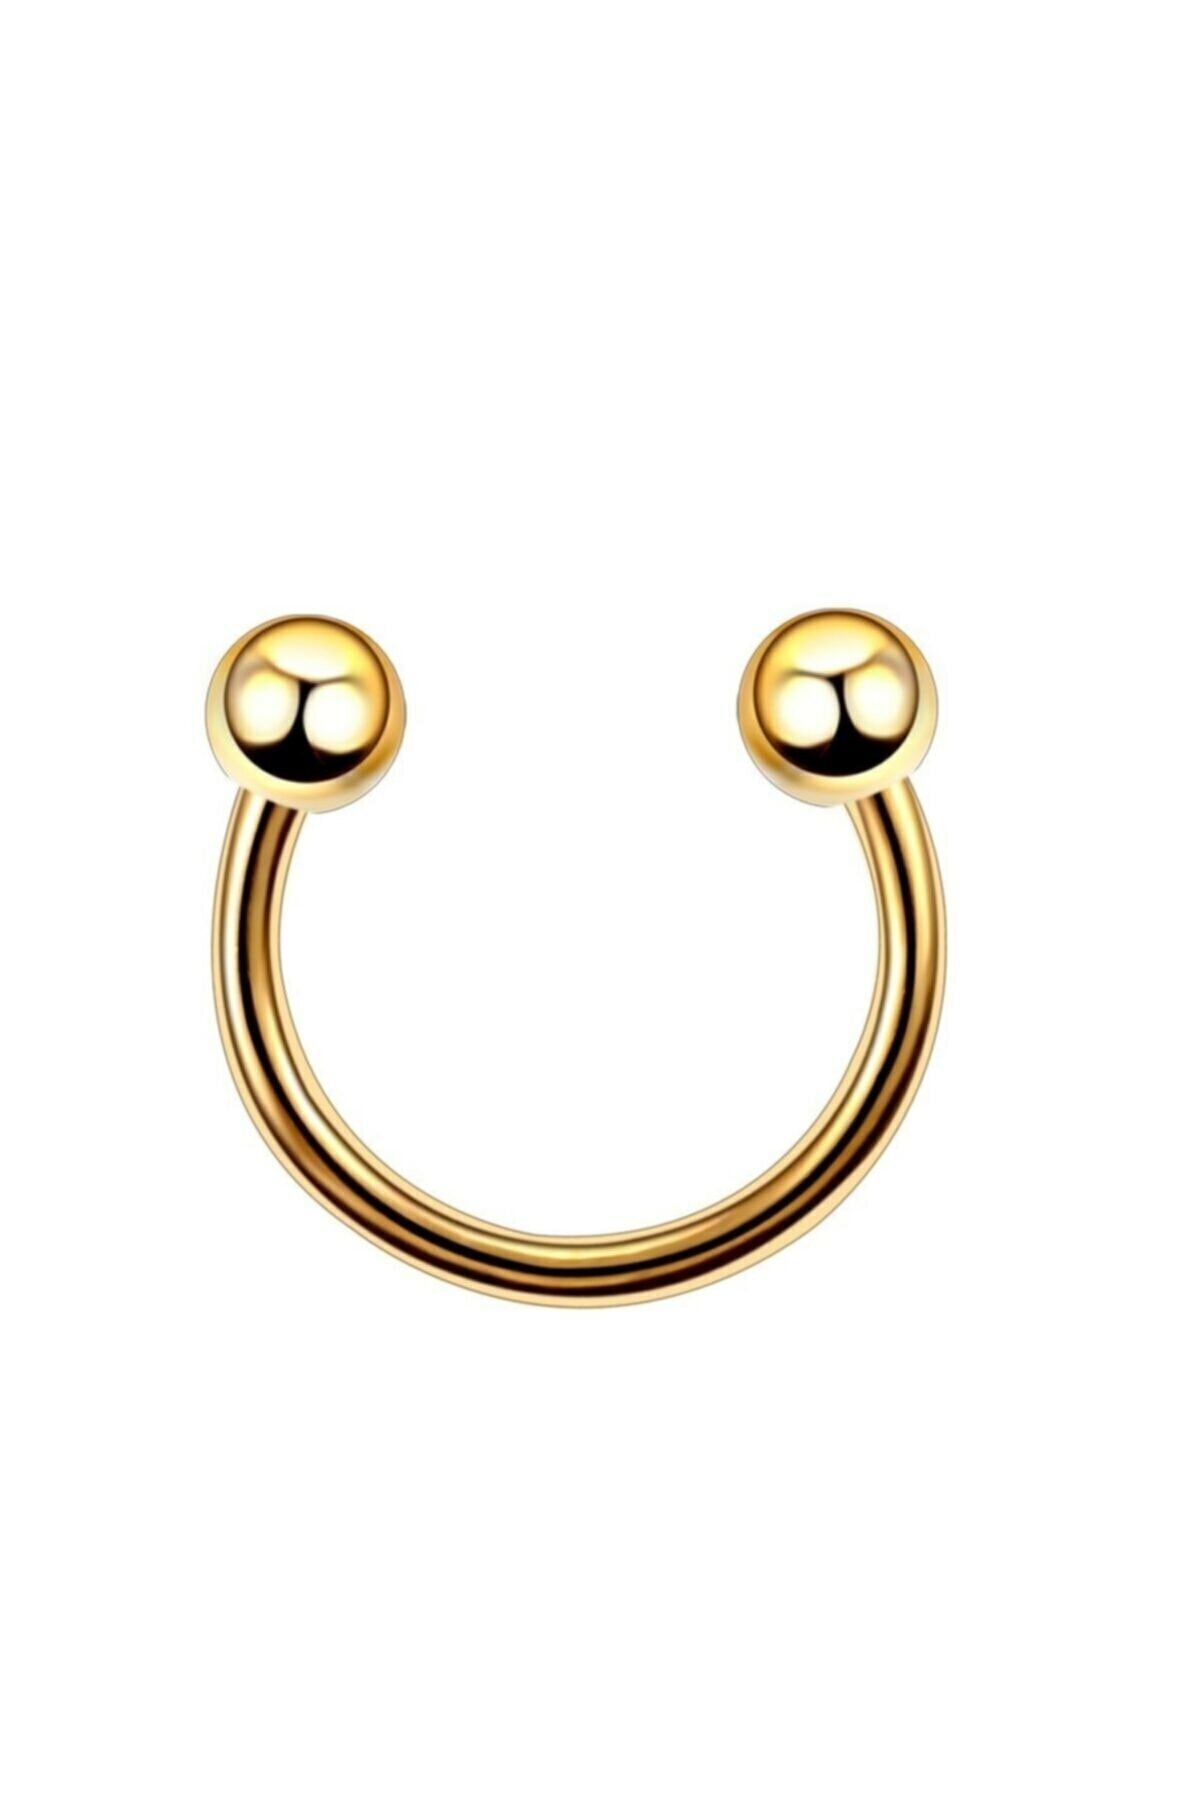 The Collection Cerrahi Çelik Gold Piercing Kulak-kıkırdak-tragus 6 Mm